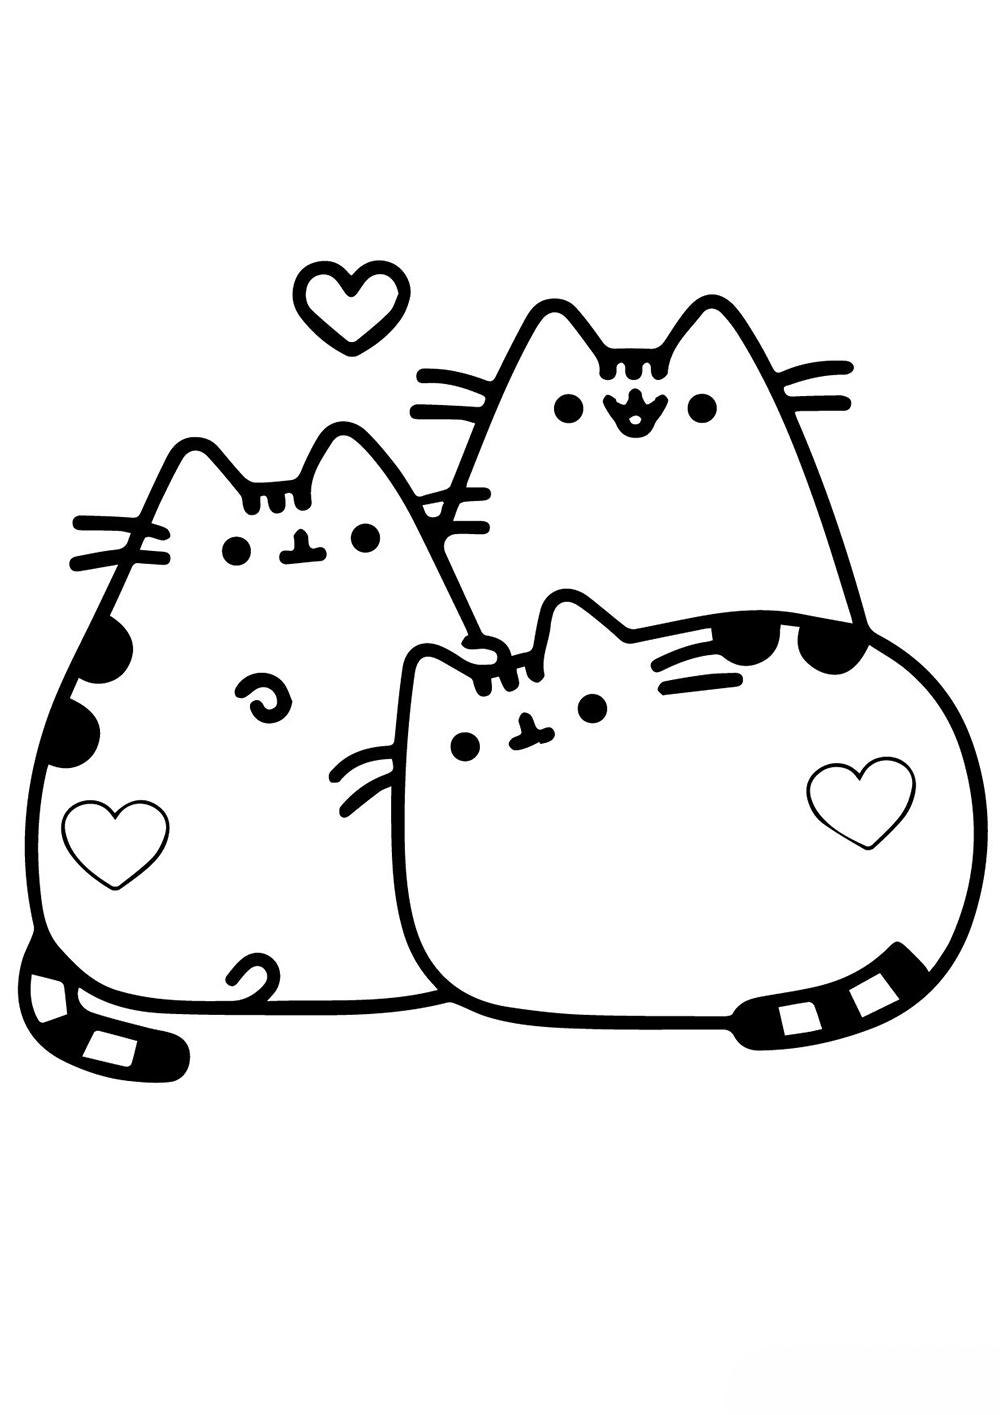 Три Влюбленных кота Пушин